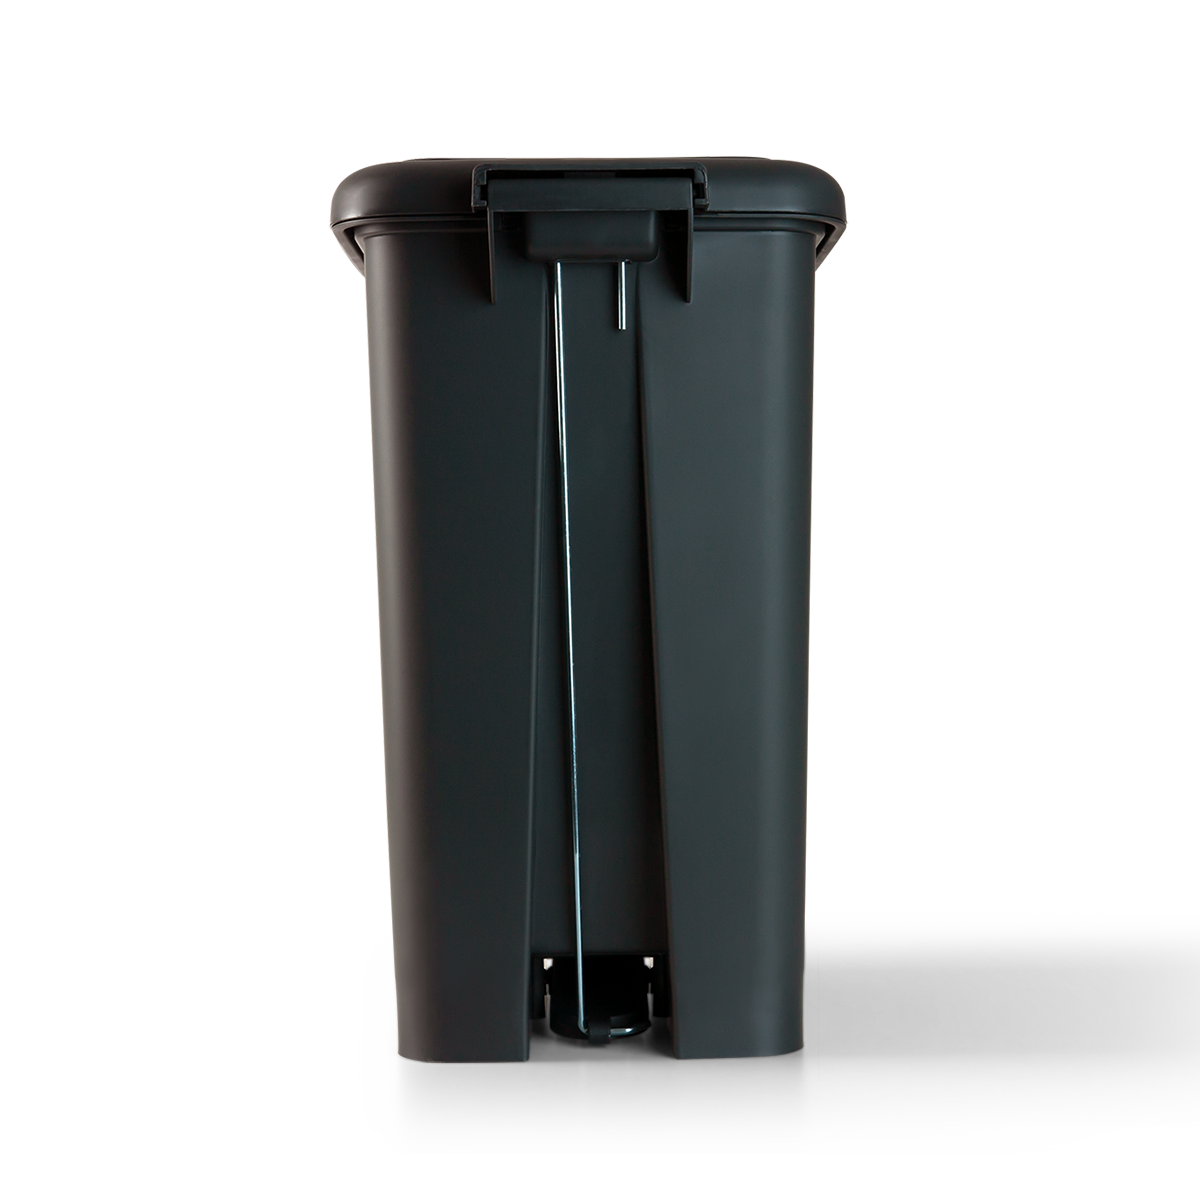 Ведро для мусора на 20л прямоугольное MVM с крышкой и педалью 430x339x252мм пластиковое черное BIN-01 20L ANTHRACITE